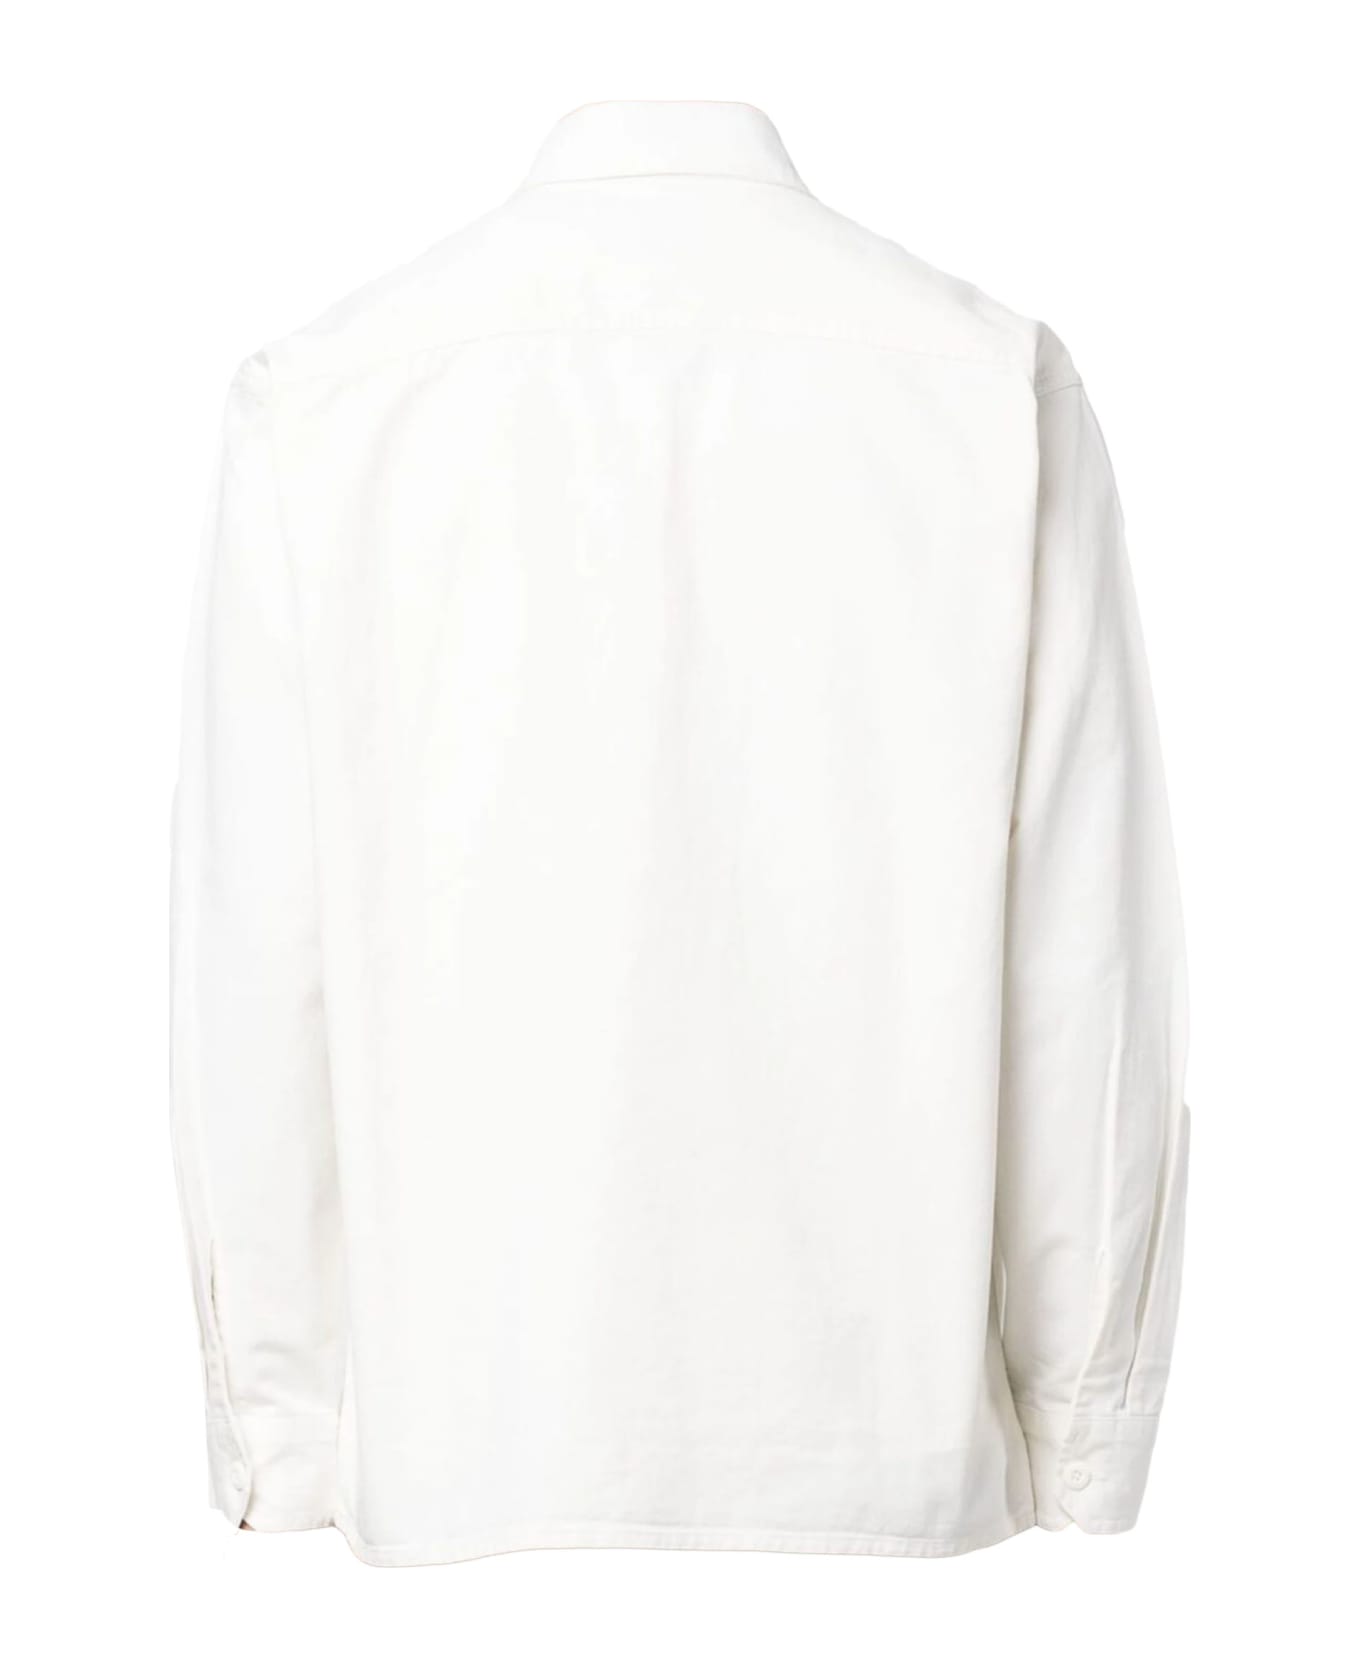 Carhartt Shirts White - White シャツ